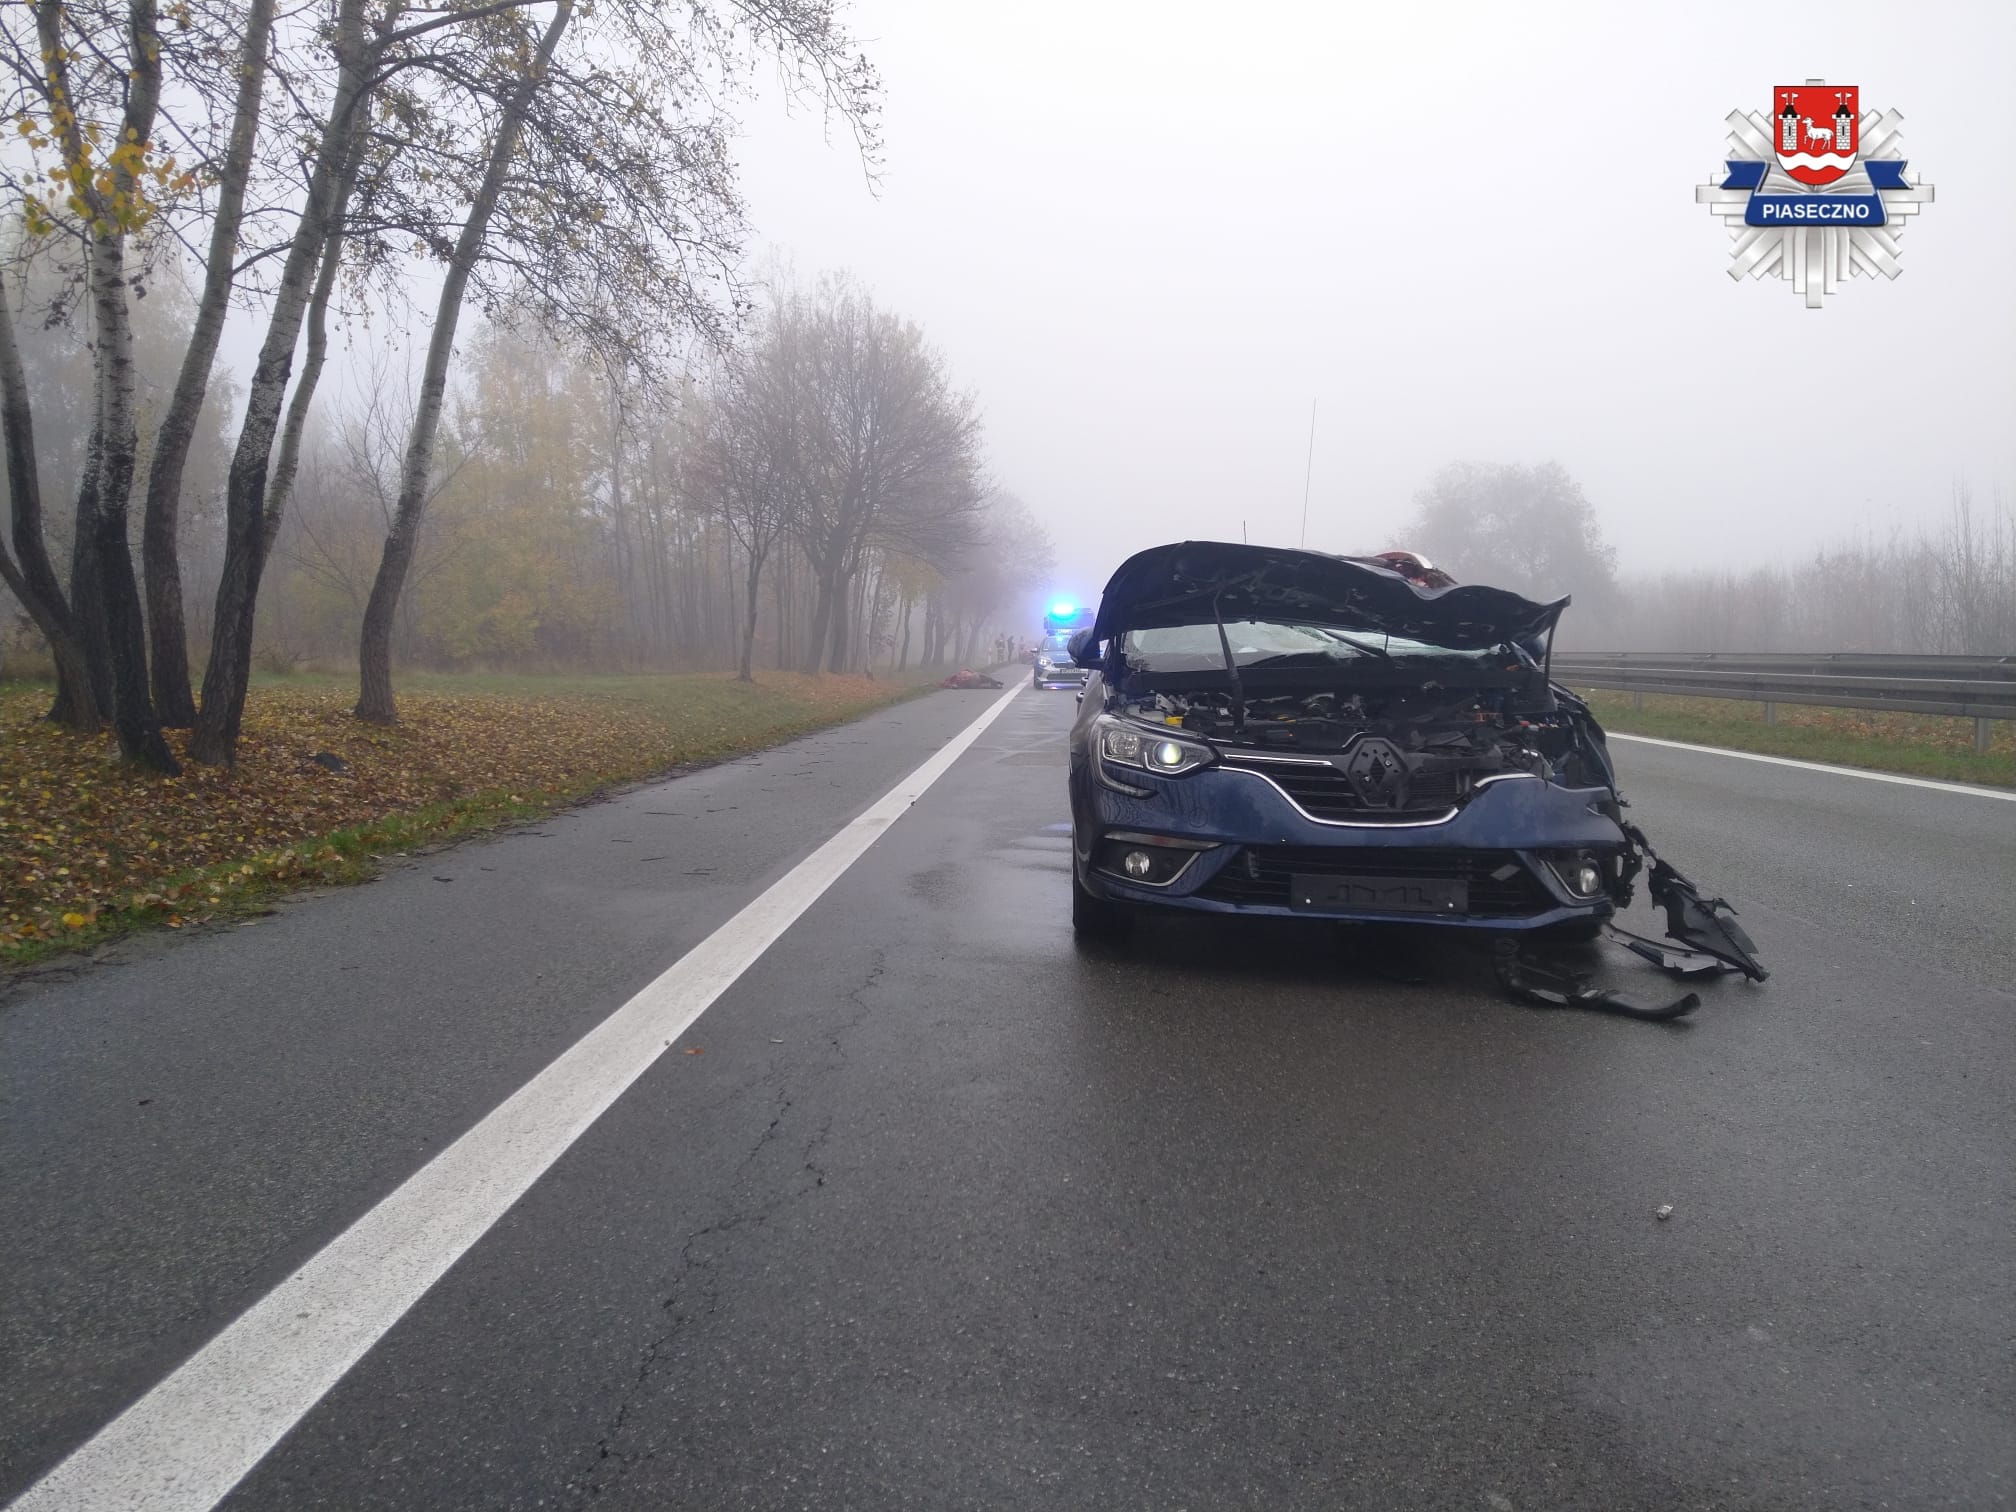 Tragiczny wypadek na S7 pod Warszawą. Rozpędzone konie zderzyły się z samochodami